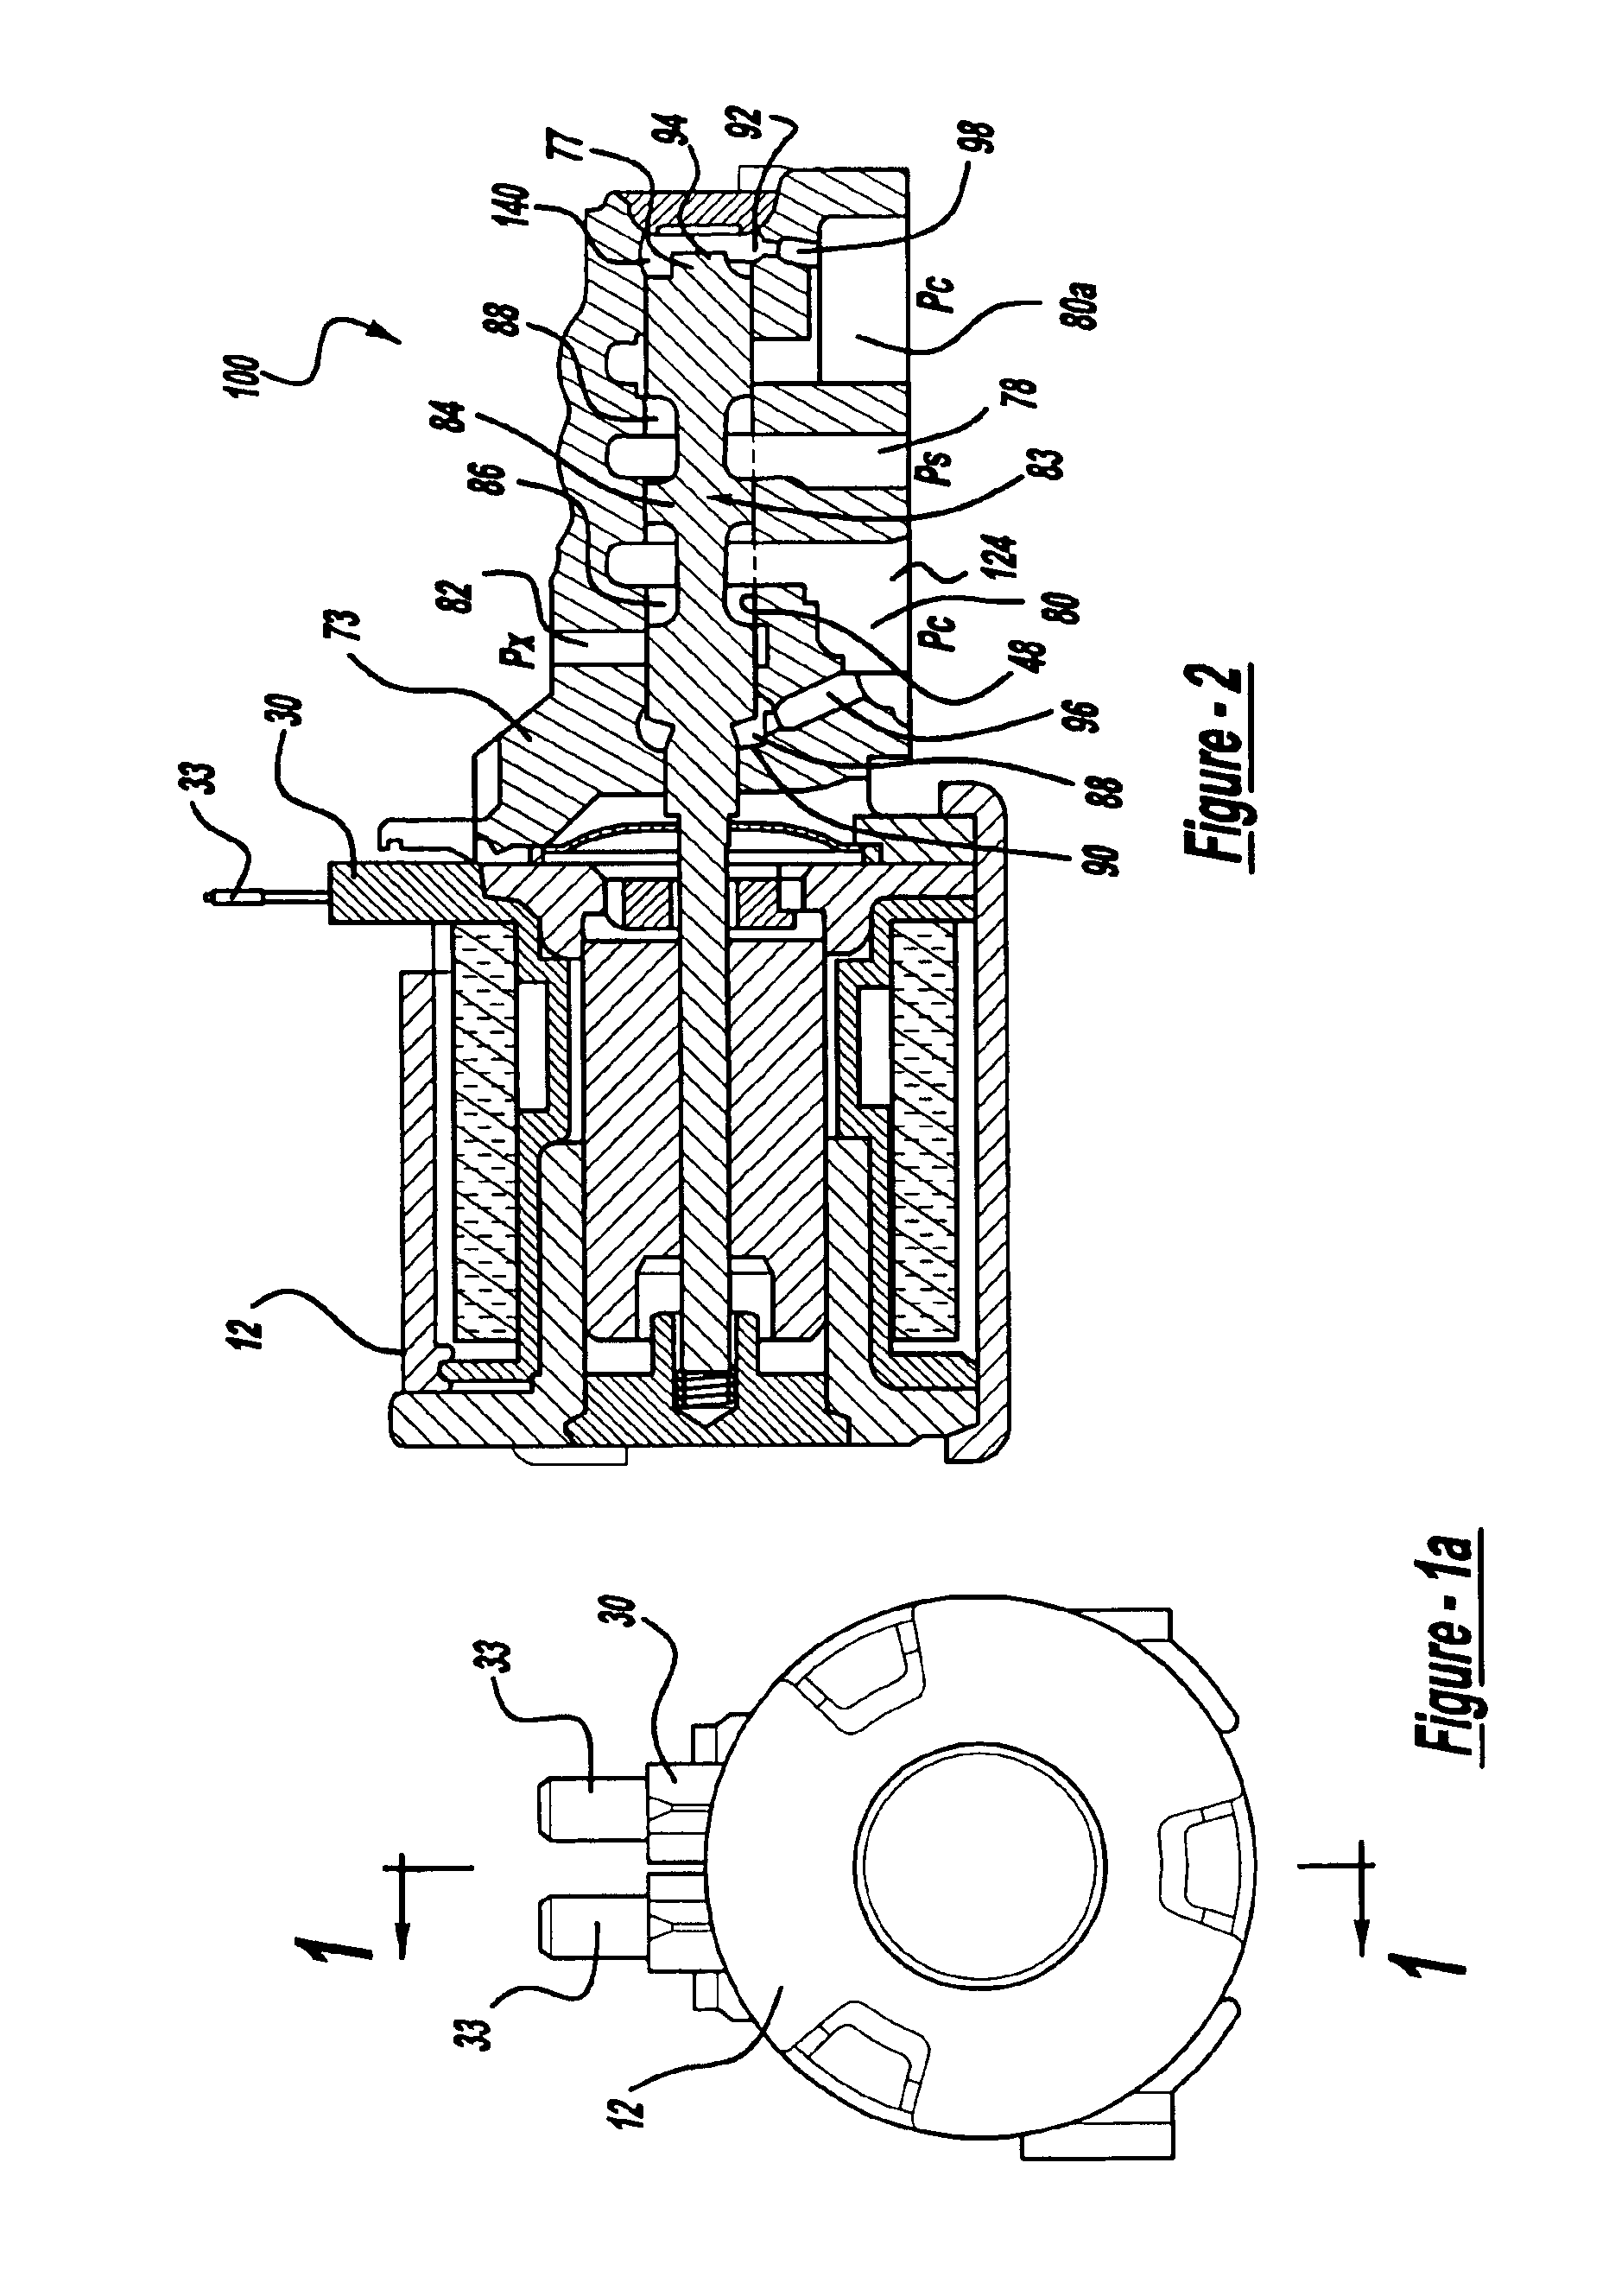 Solenoid control valve